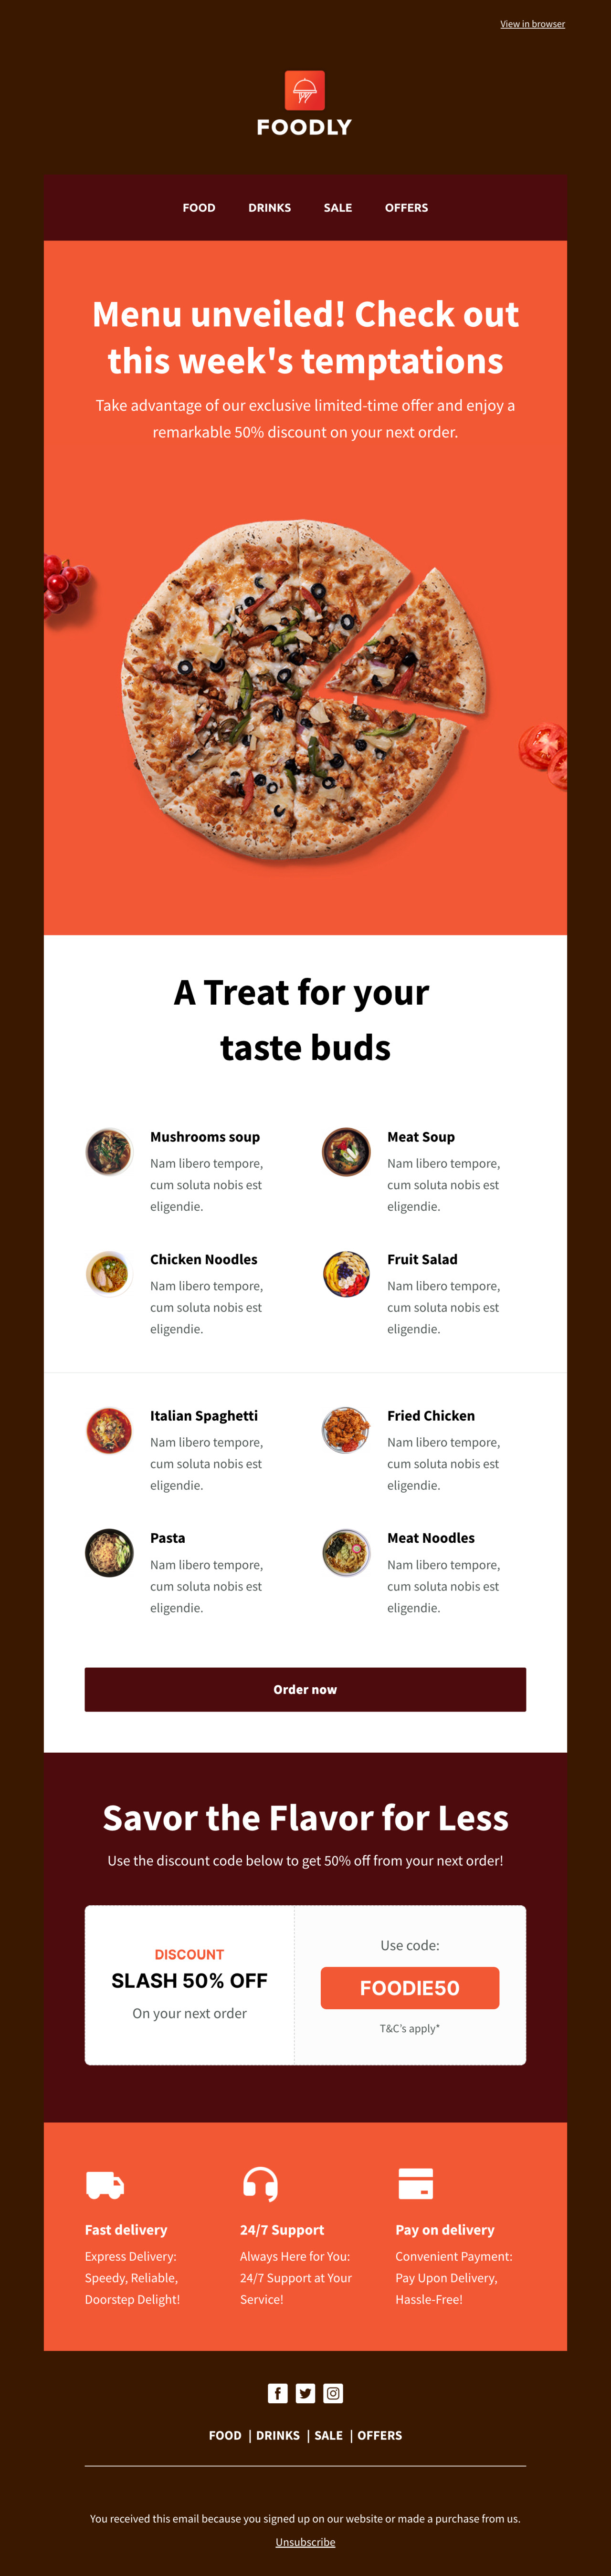 Food Menu email szablon - stworzony przez MailerLite